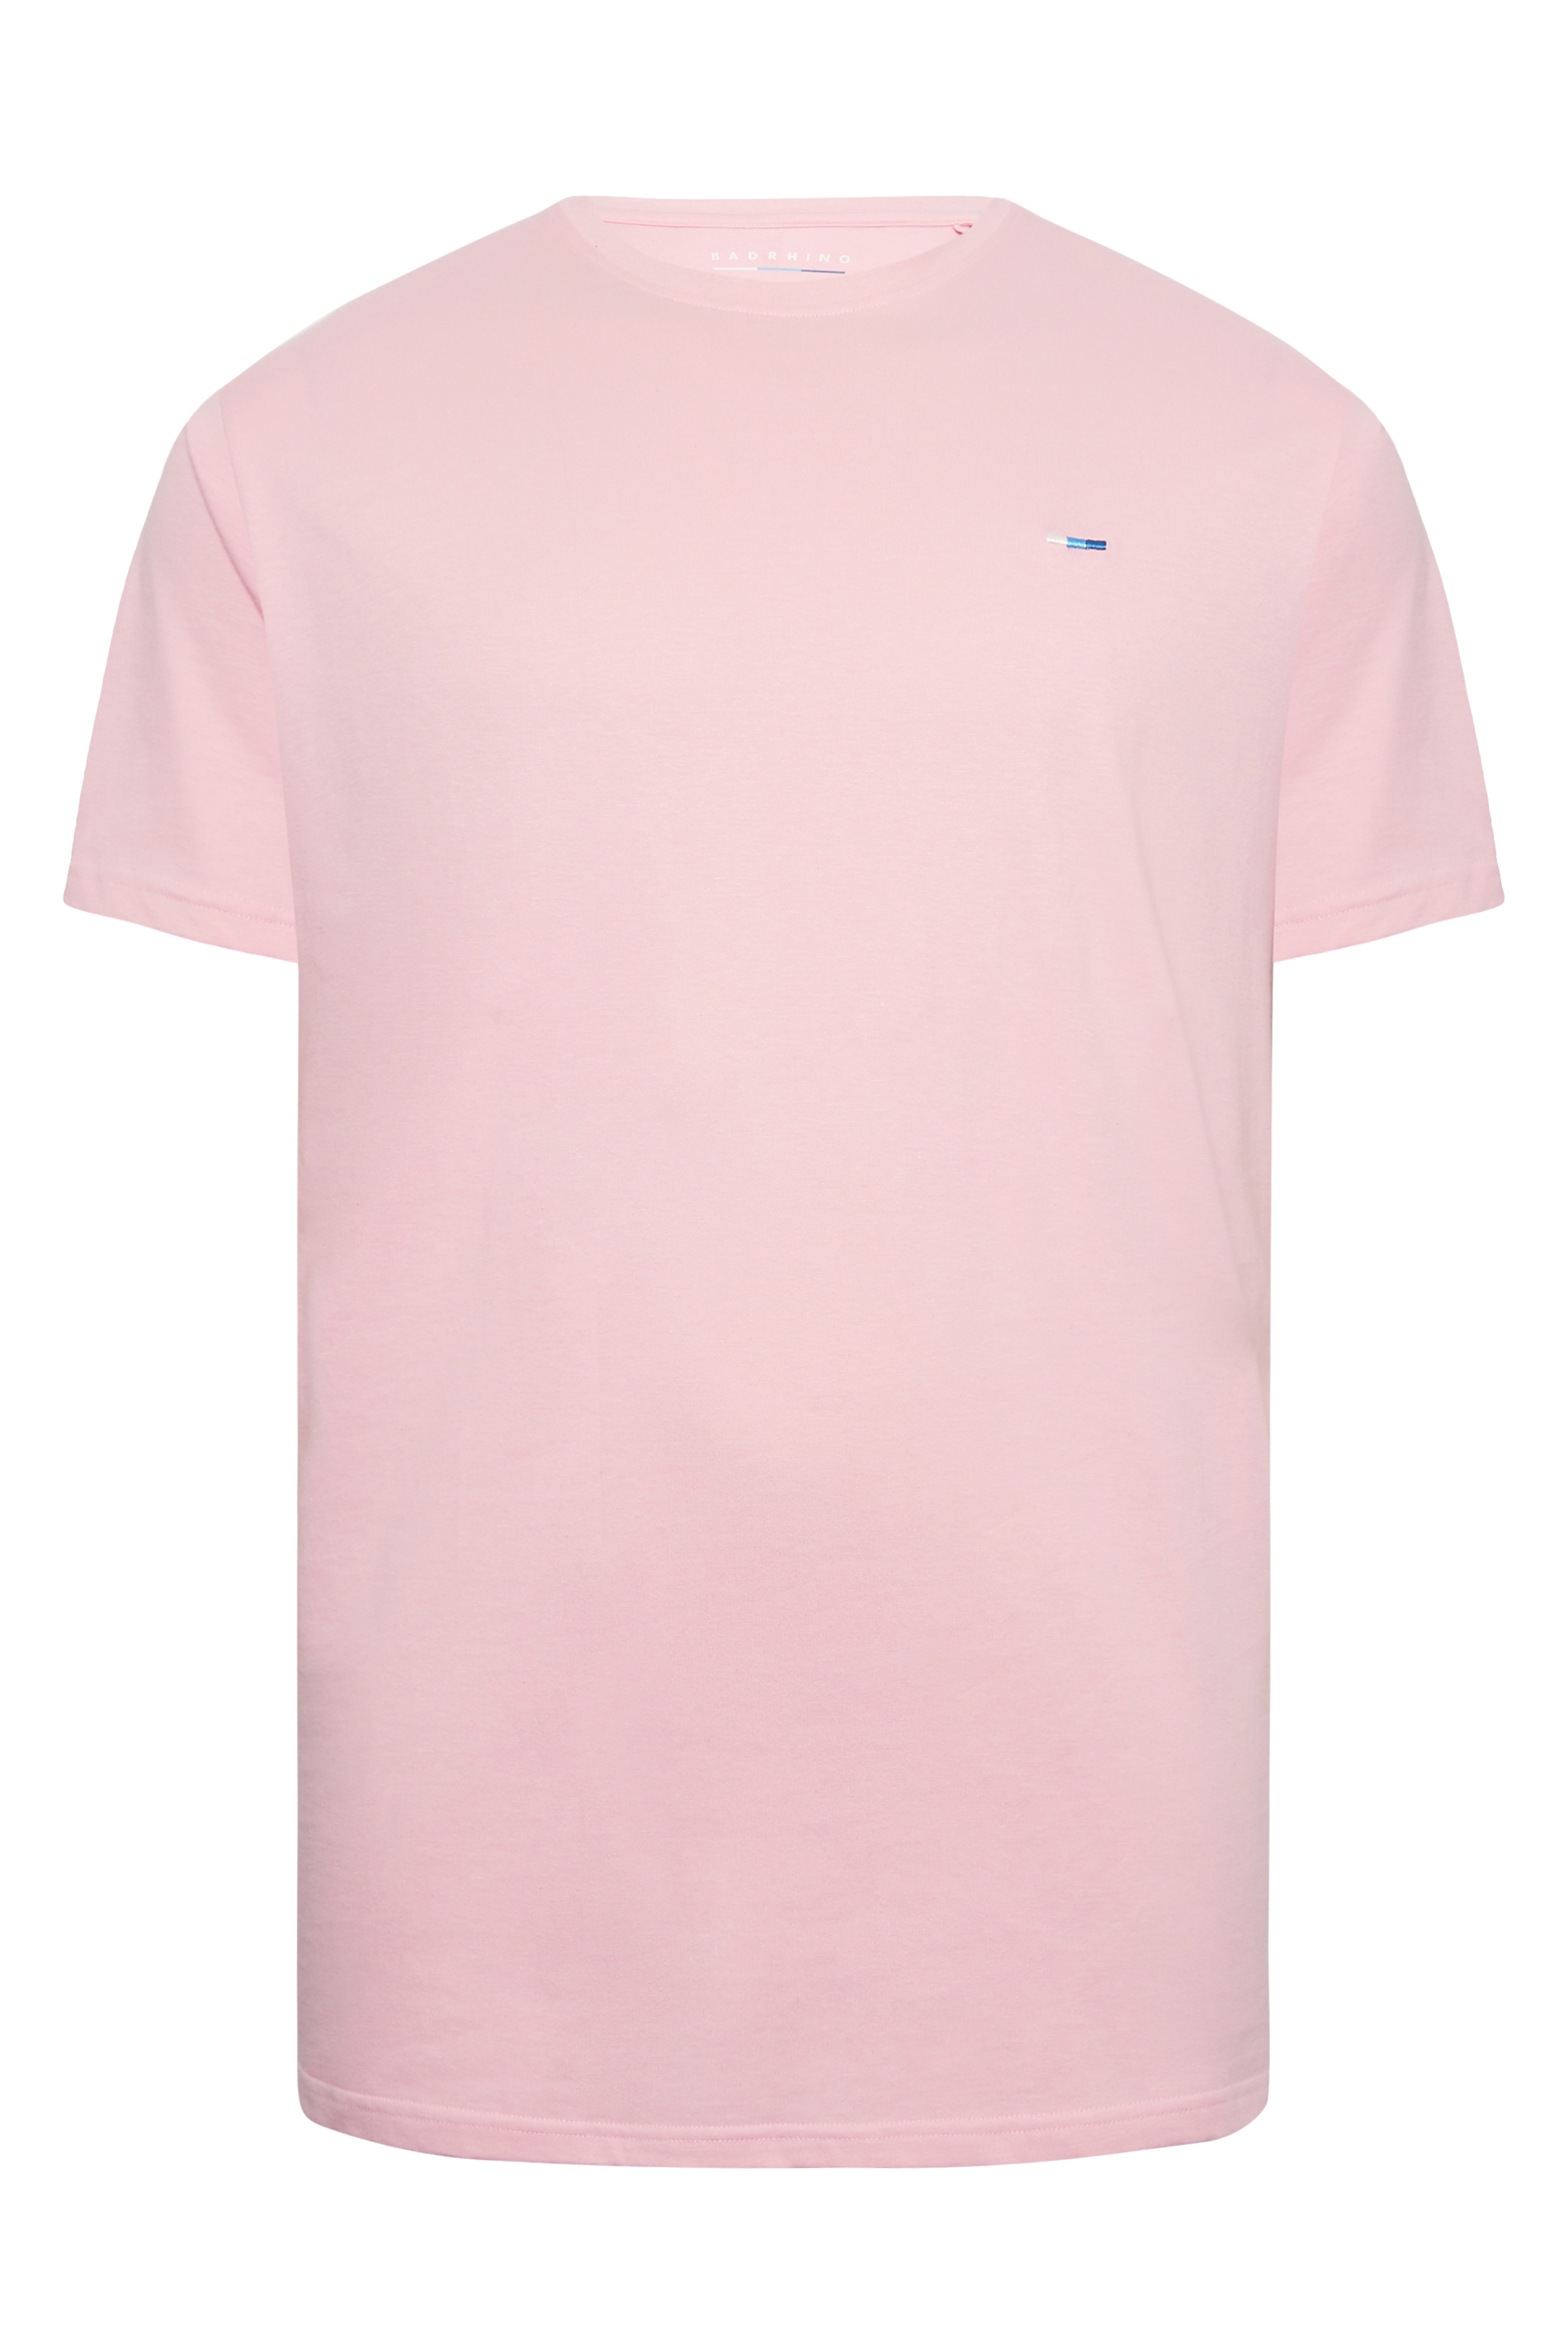 BadRhino Big & Tall Light Pink Core T-Shirt | BadRhino 3